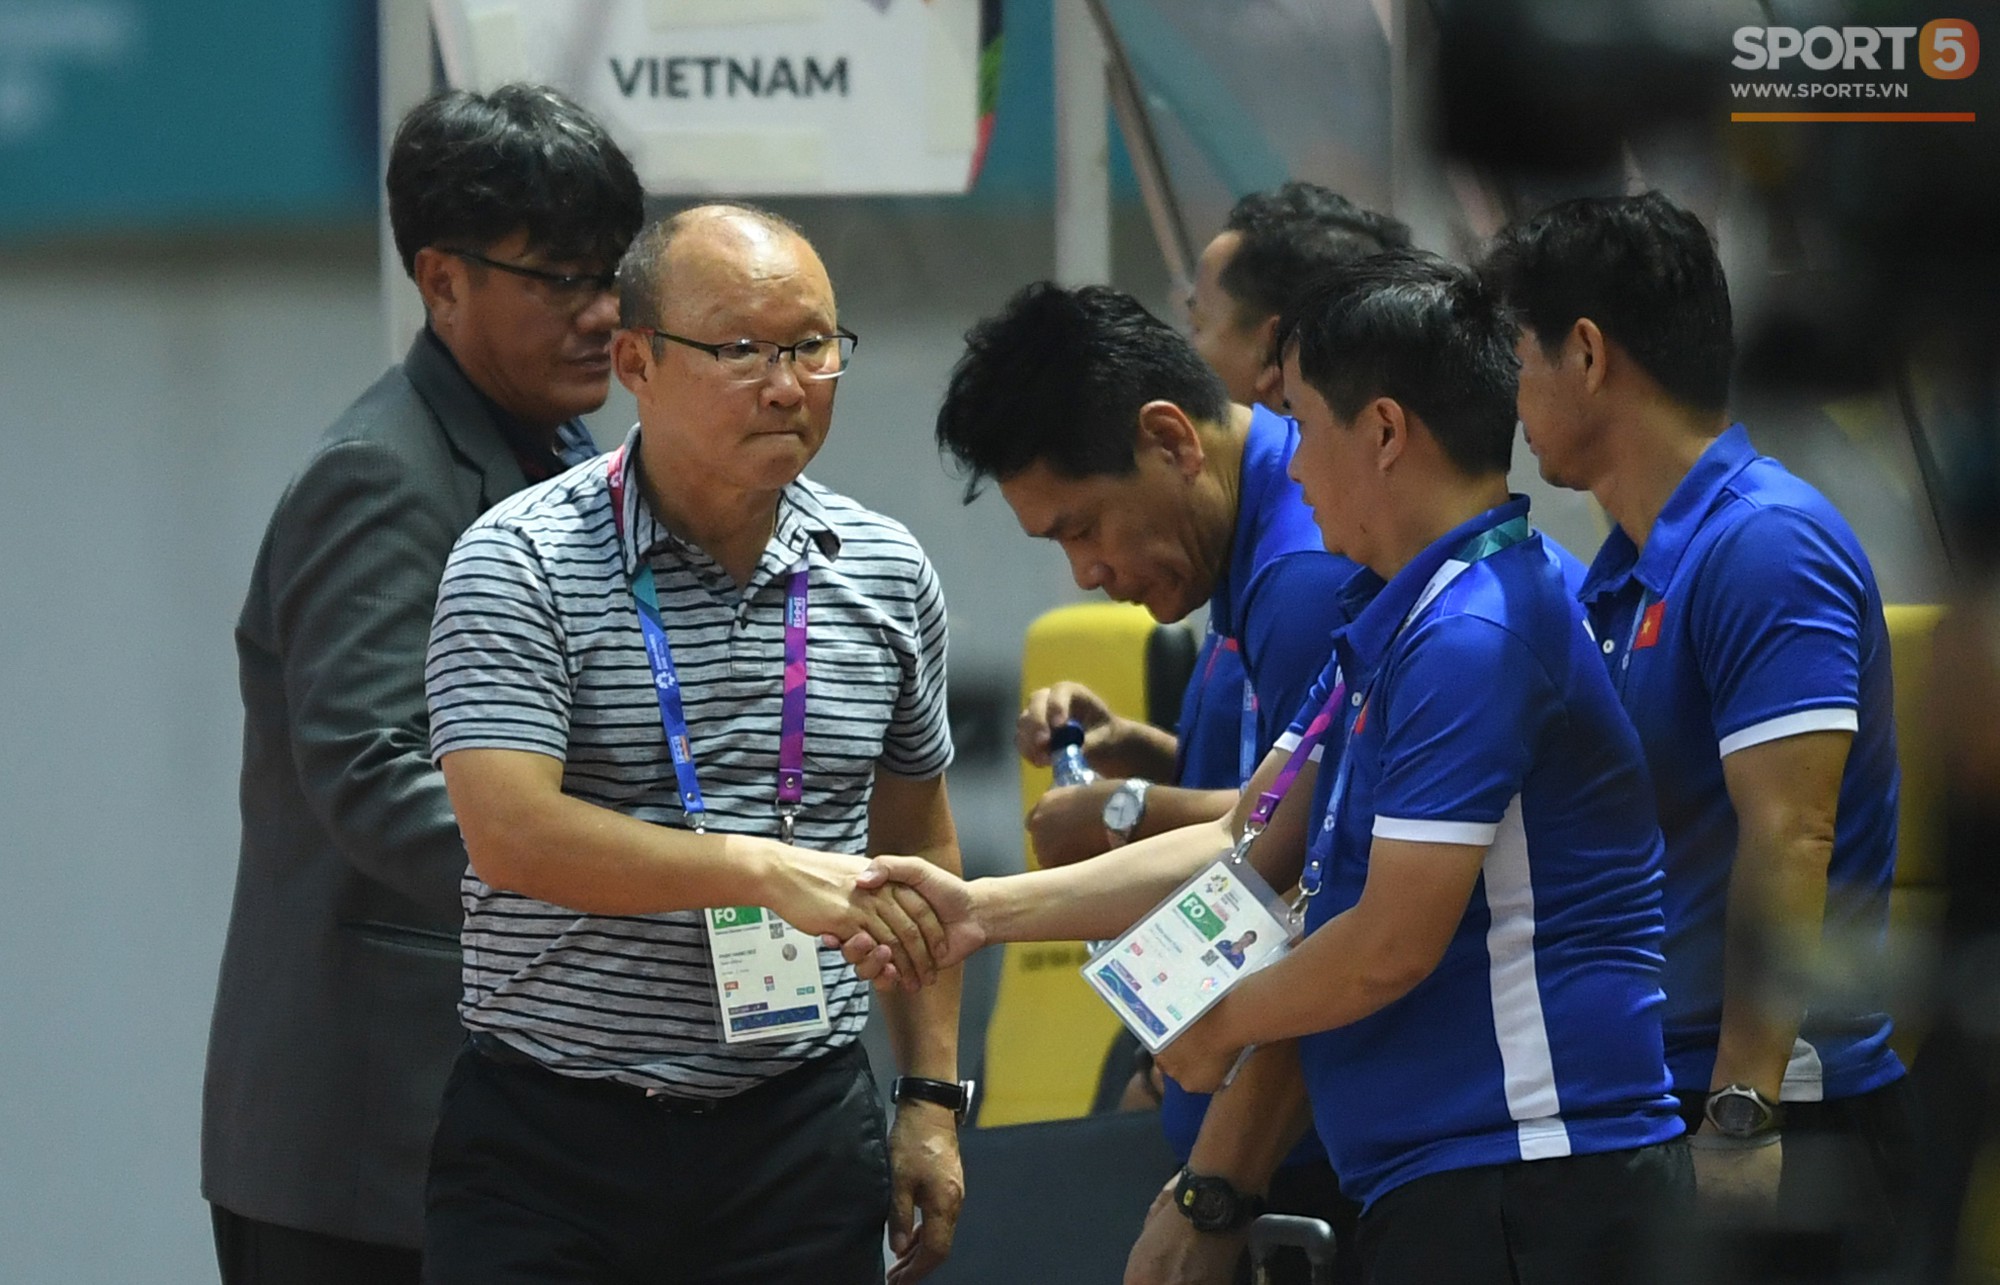 HLV Park Hang-seo bắt tay từng cầu thủ, cười tươi sau chiến thắng 3 sao trước Olympic Pakistan - Ảnh 4.